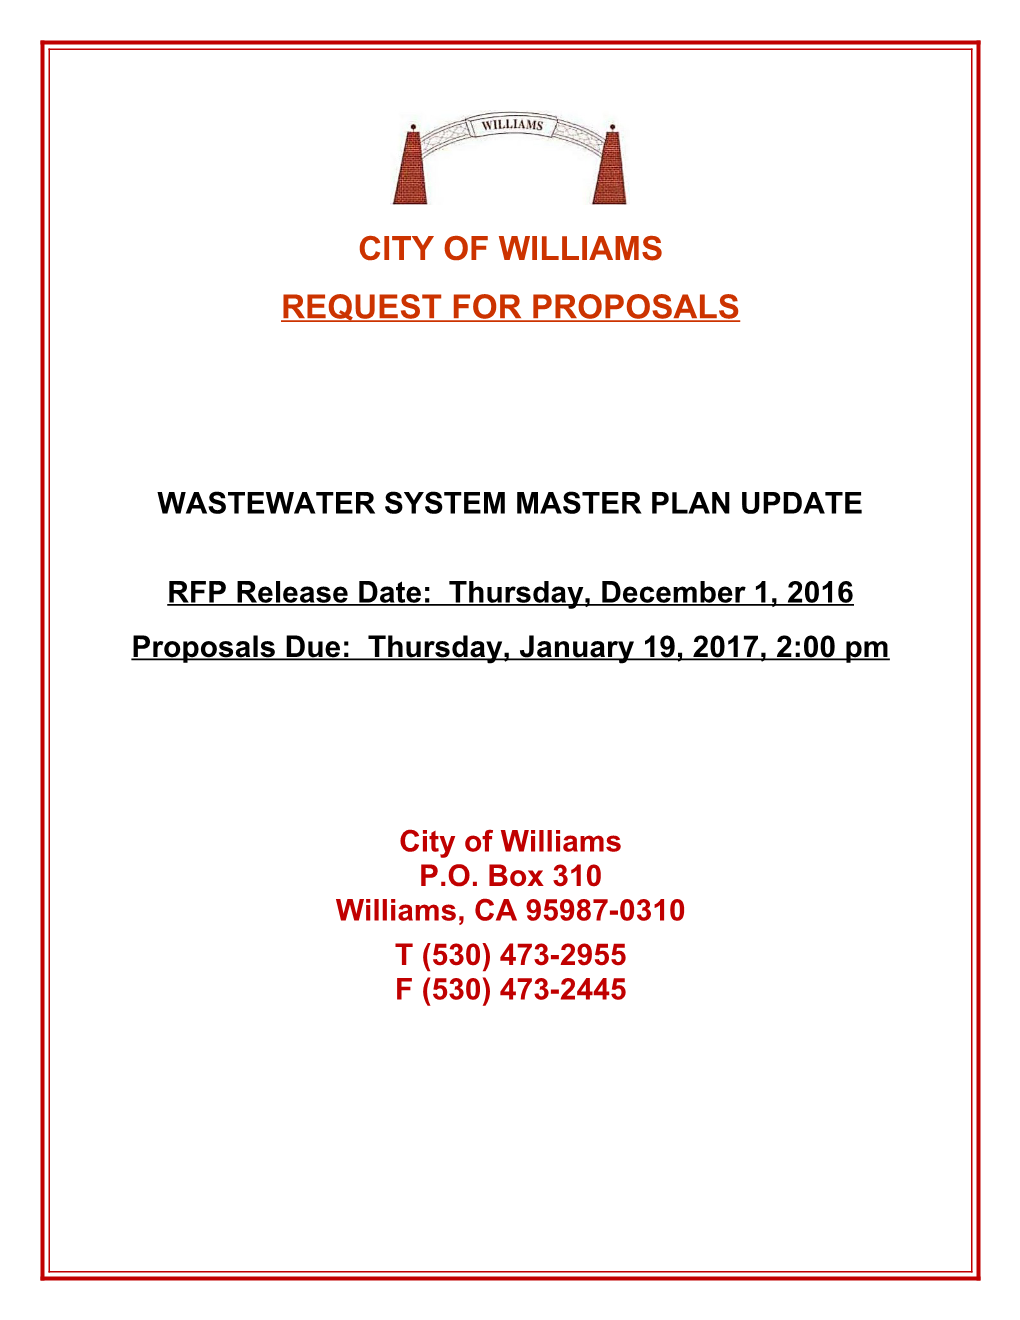 Wastewater System Master Plan Update